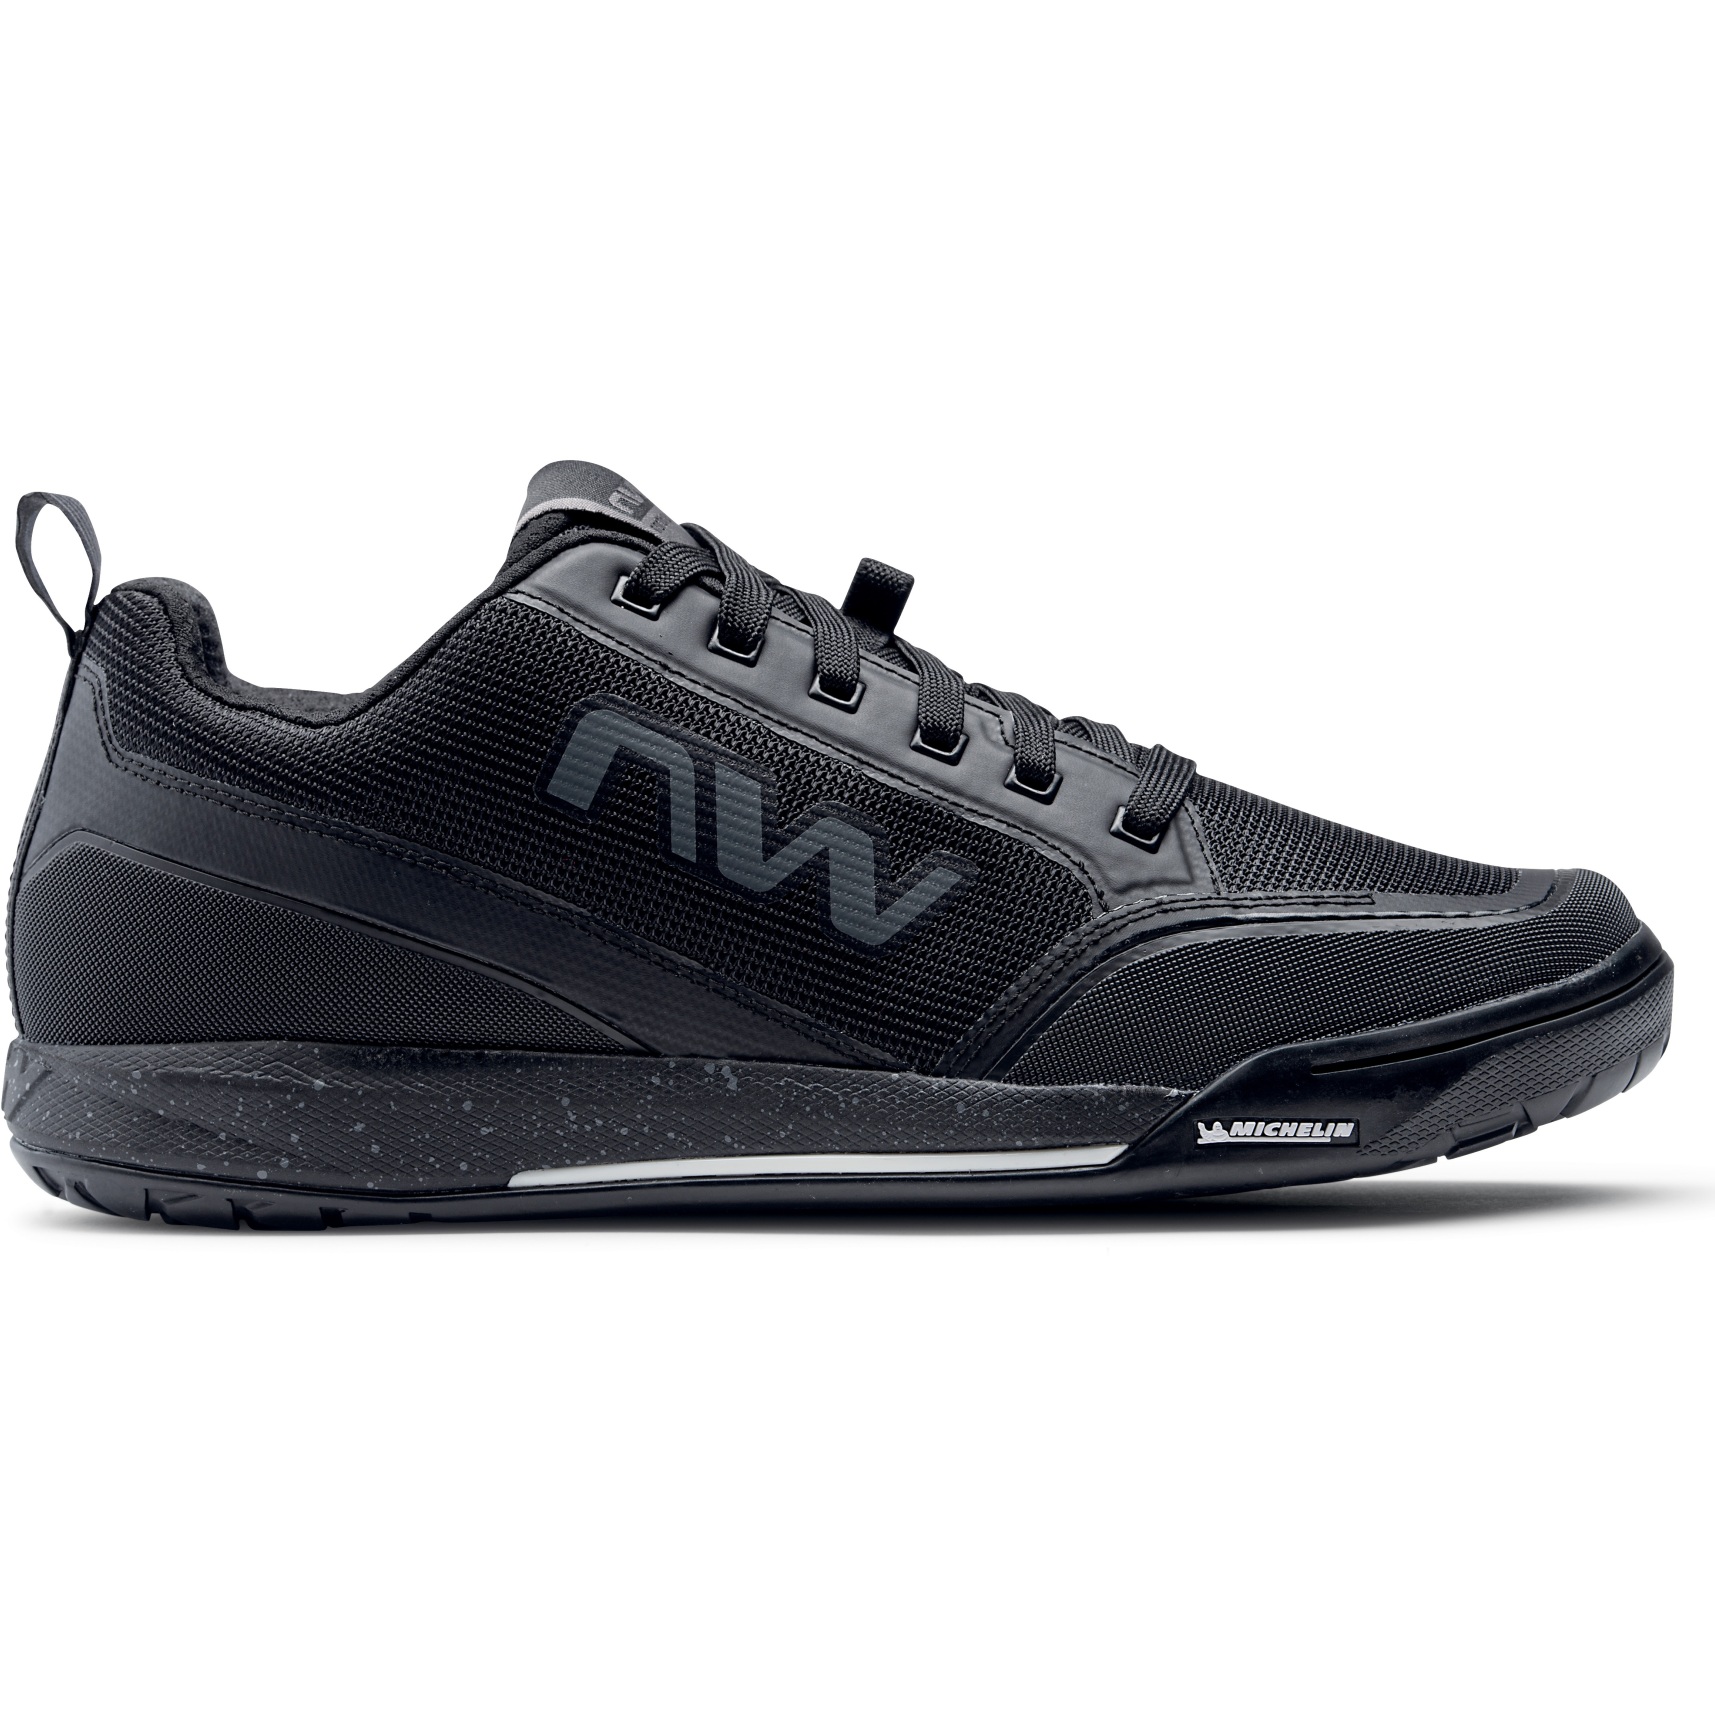 Produktbild von Northwave Clan 2 Flat Pedal Schuhe - schwarz 10